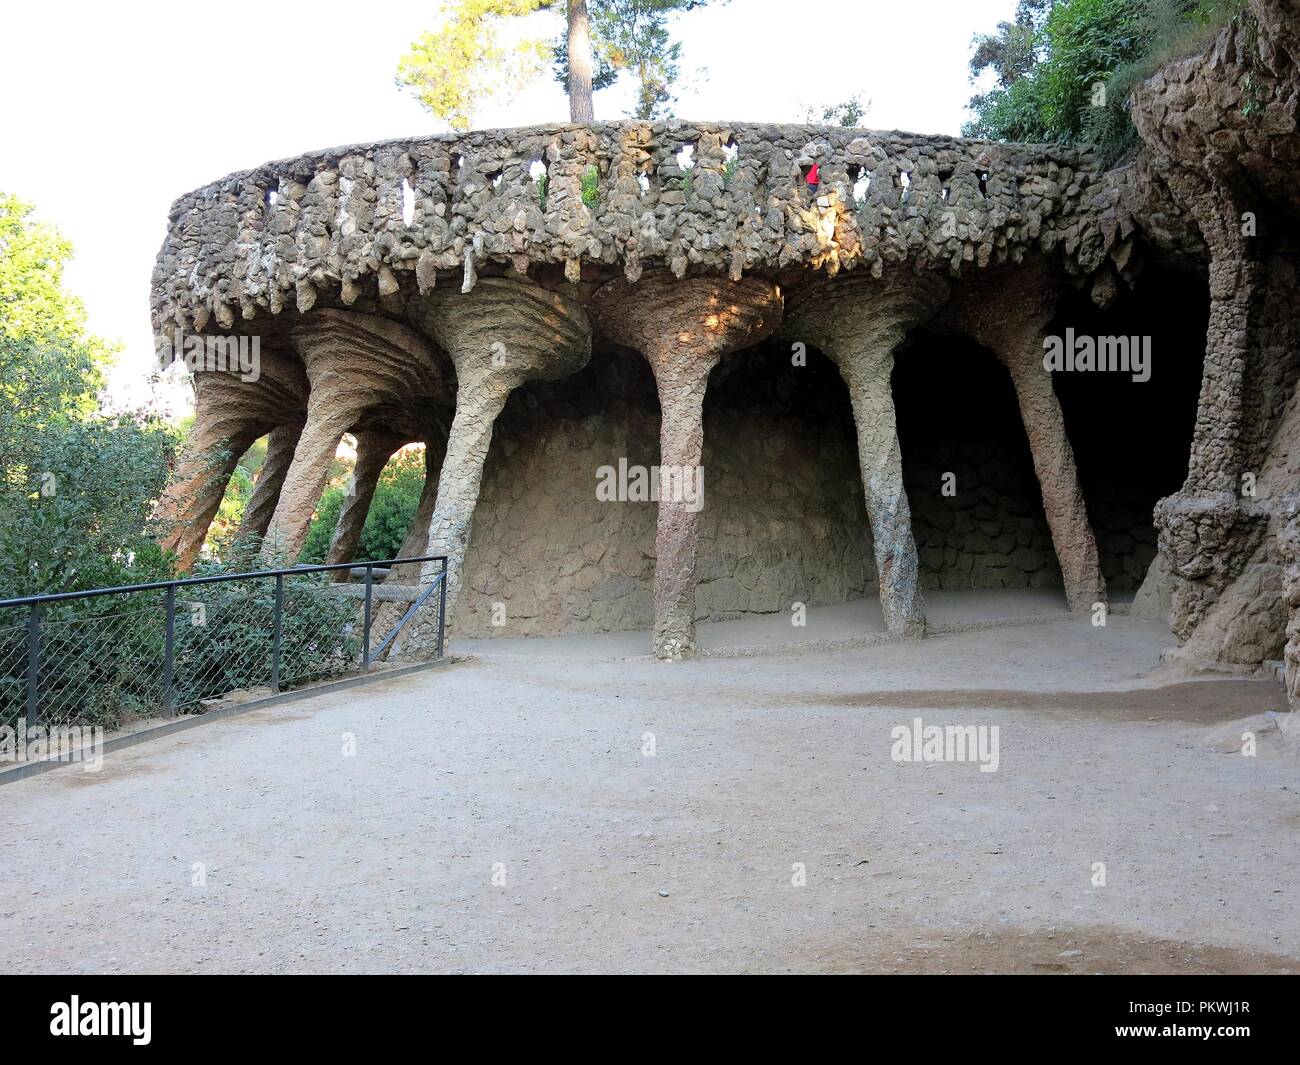 Park Güell, Gaudi's creation, Barcelona, Spain. Stock Photo